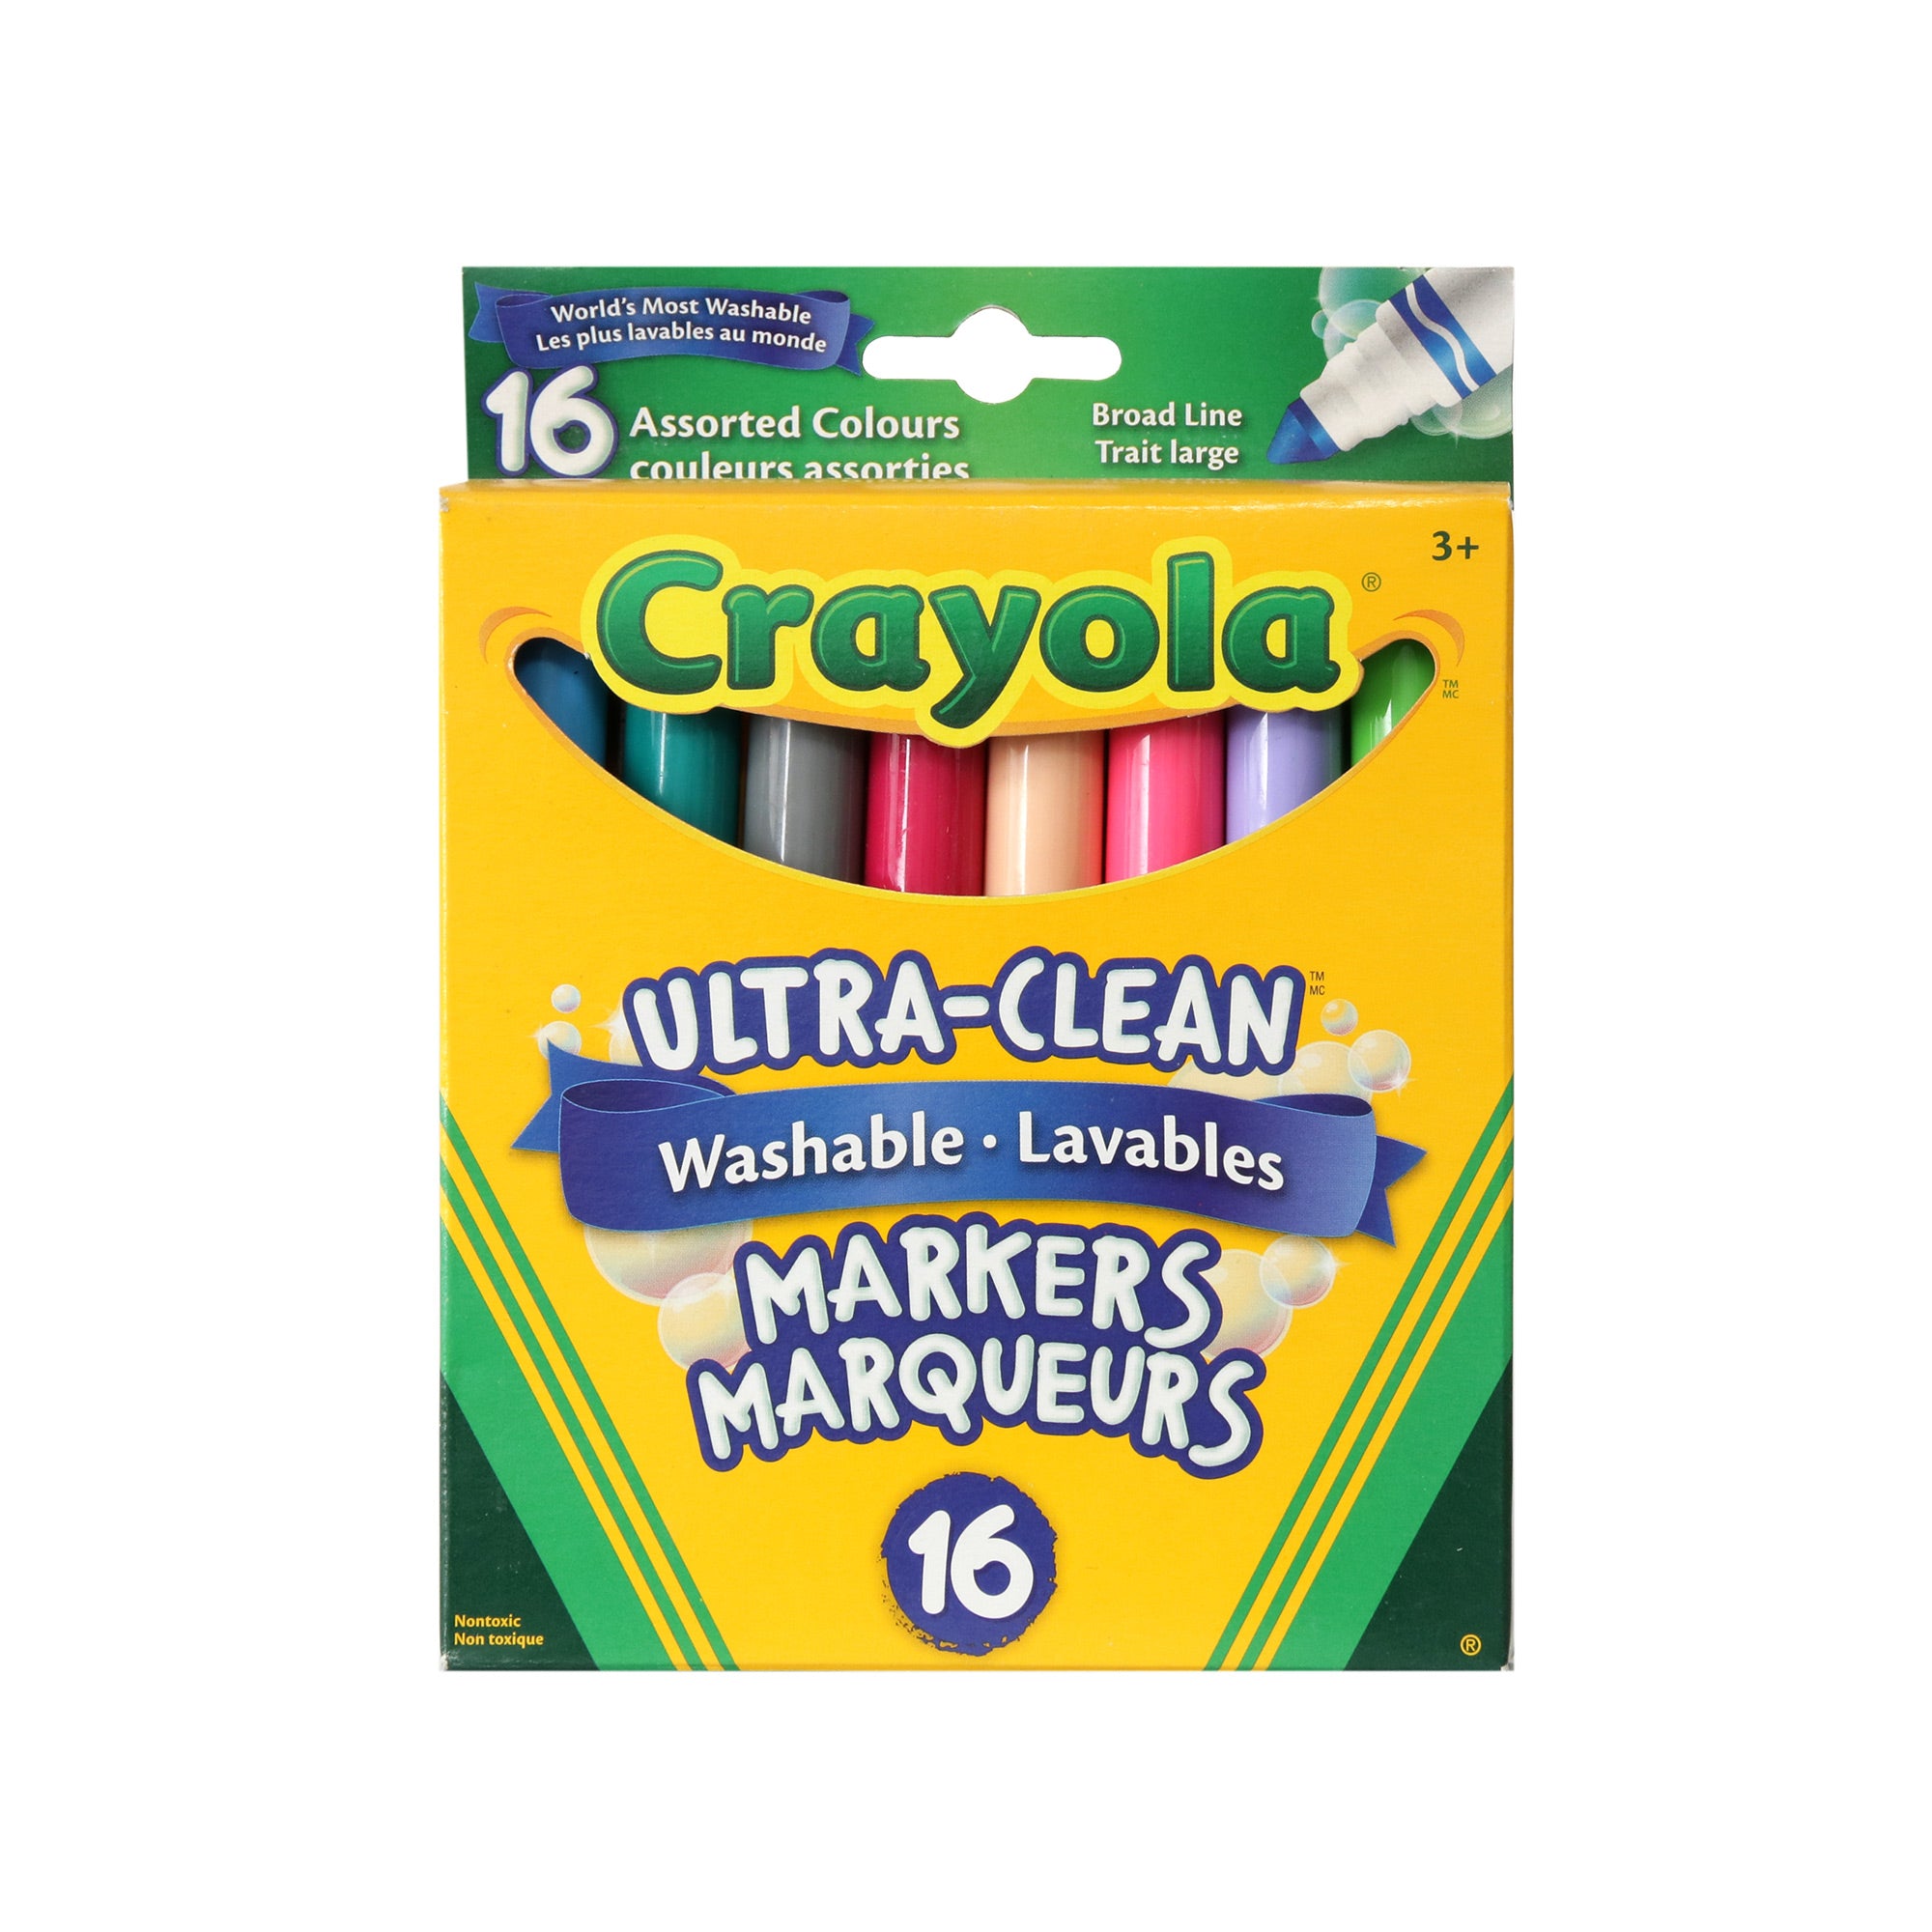 Crayon Feutre Crayola Super Tips boite de 20 - BBD Solutions Scolaire